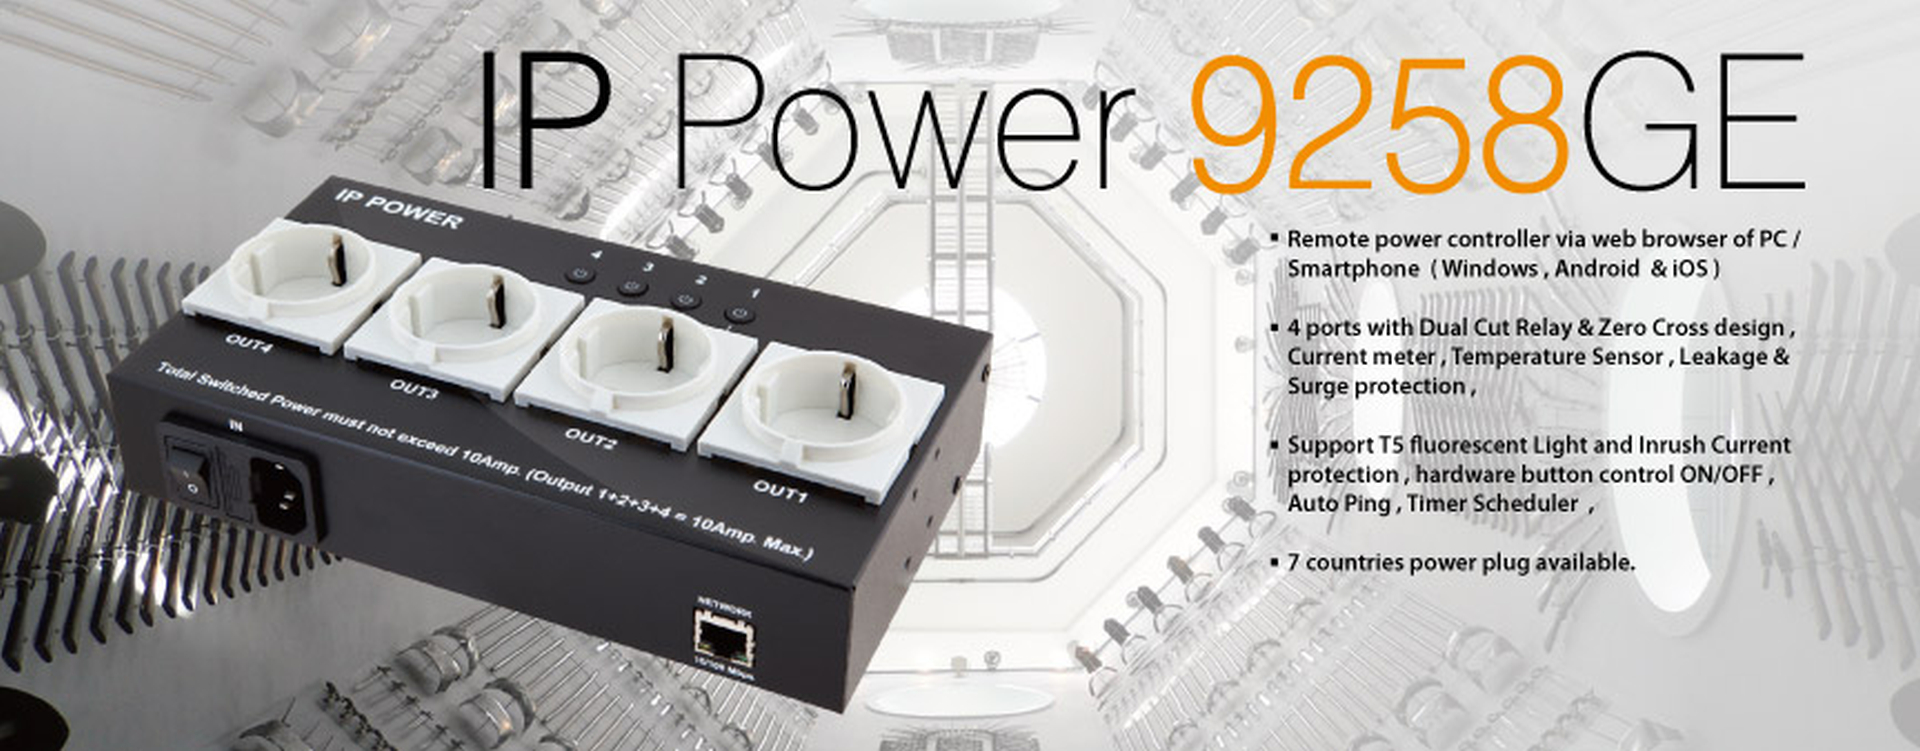 IP Power 9258